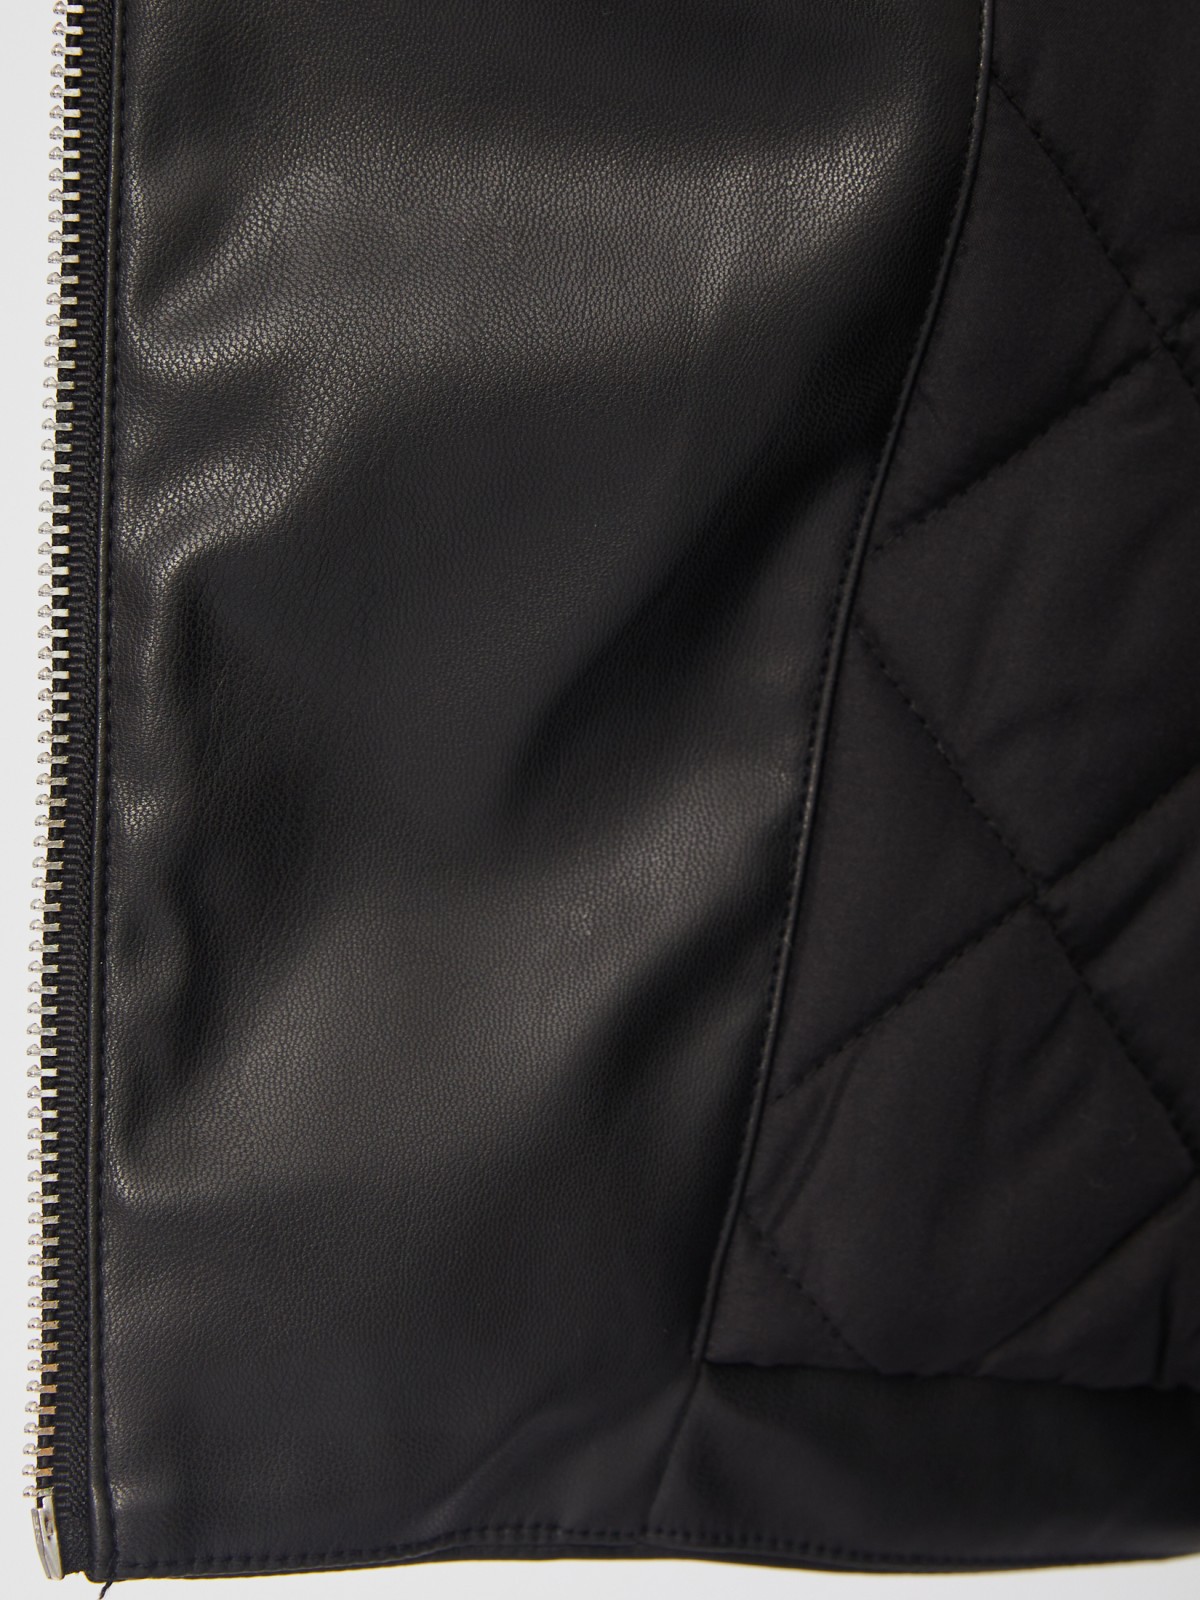 Тёплая куртка-косуха из экокожи на синтепоне с поясом zolla 023335150014, цвет черный, размер M - фото 6